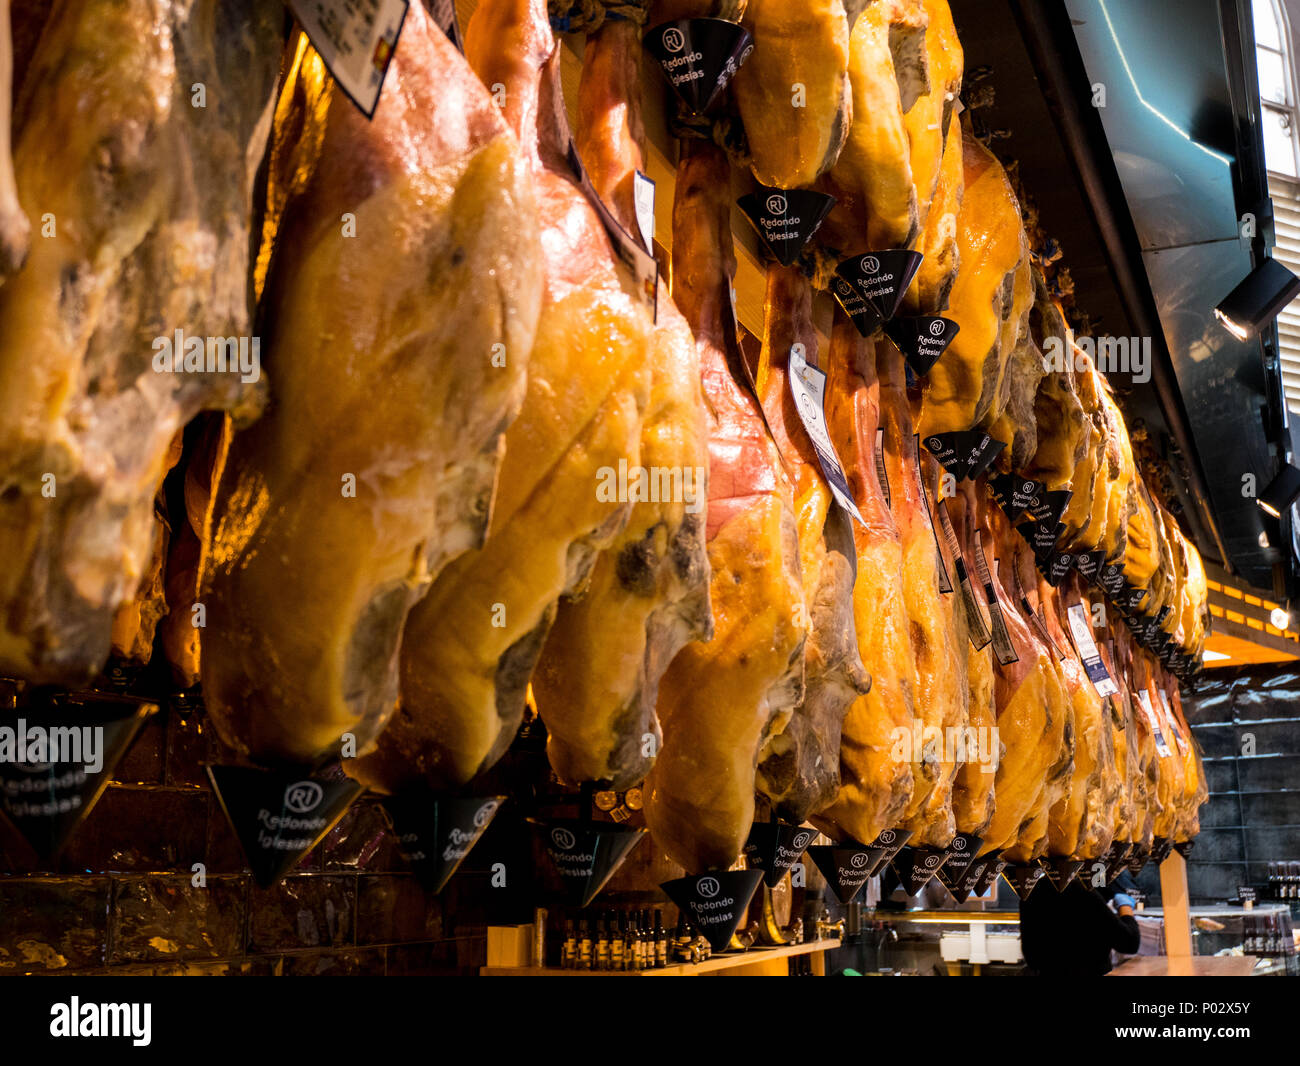 Jambons qui pendent du marché central de Valence, Espagne Banque D'Images